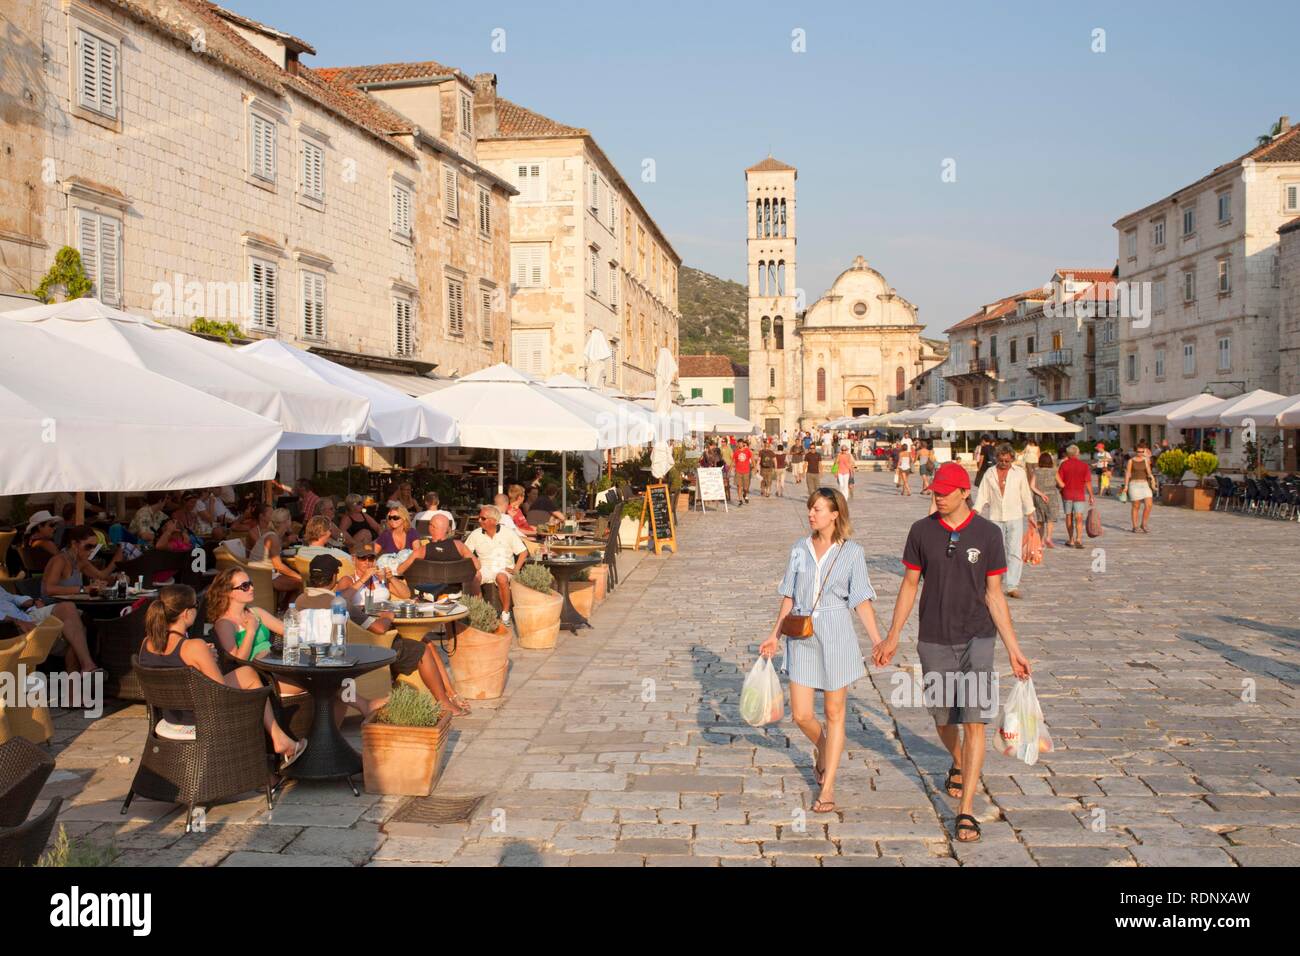 La piazza principale della città di Lesina, Hvar, isola della Dalmazia centrale, Adriatico, Croazia, Europa Foto Stock